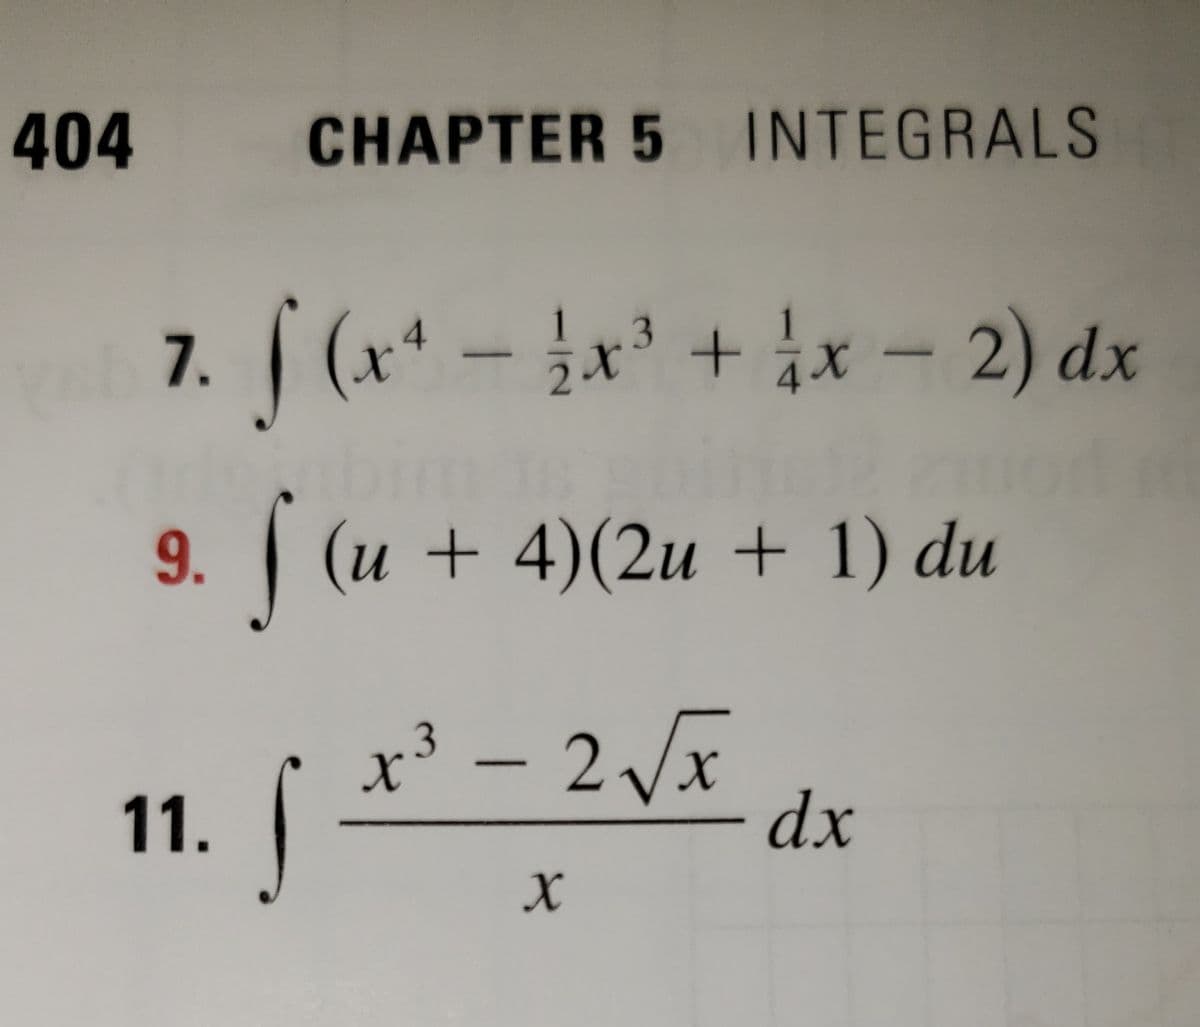 404
CHAPTER 5 INTEGRALS
7. (x* - x + ix - 2) dx
1
243
9. (u + 4)(2u + 1) du
x³ – 2 x
dx
11.
